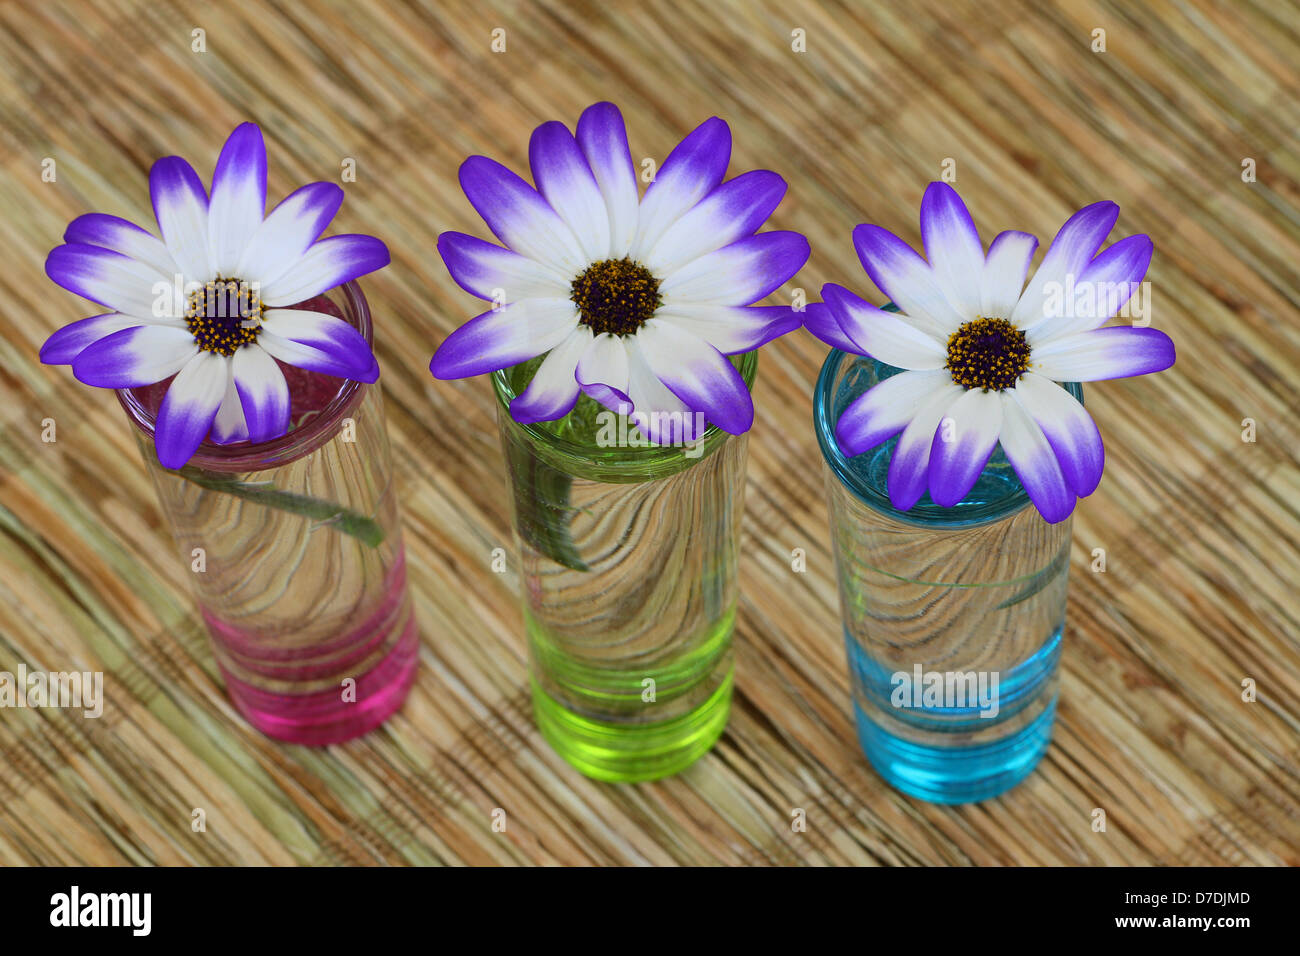 Senecio fiori in vetri colorati con acqua Foto Stock